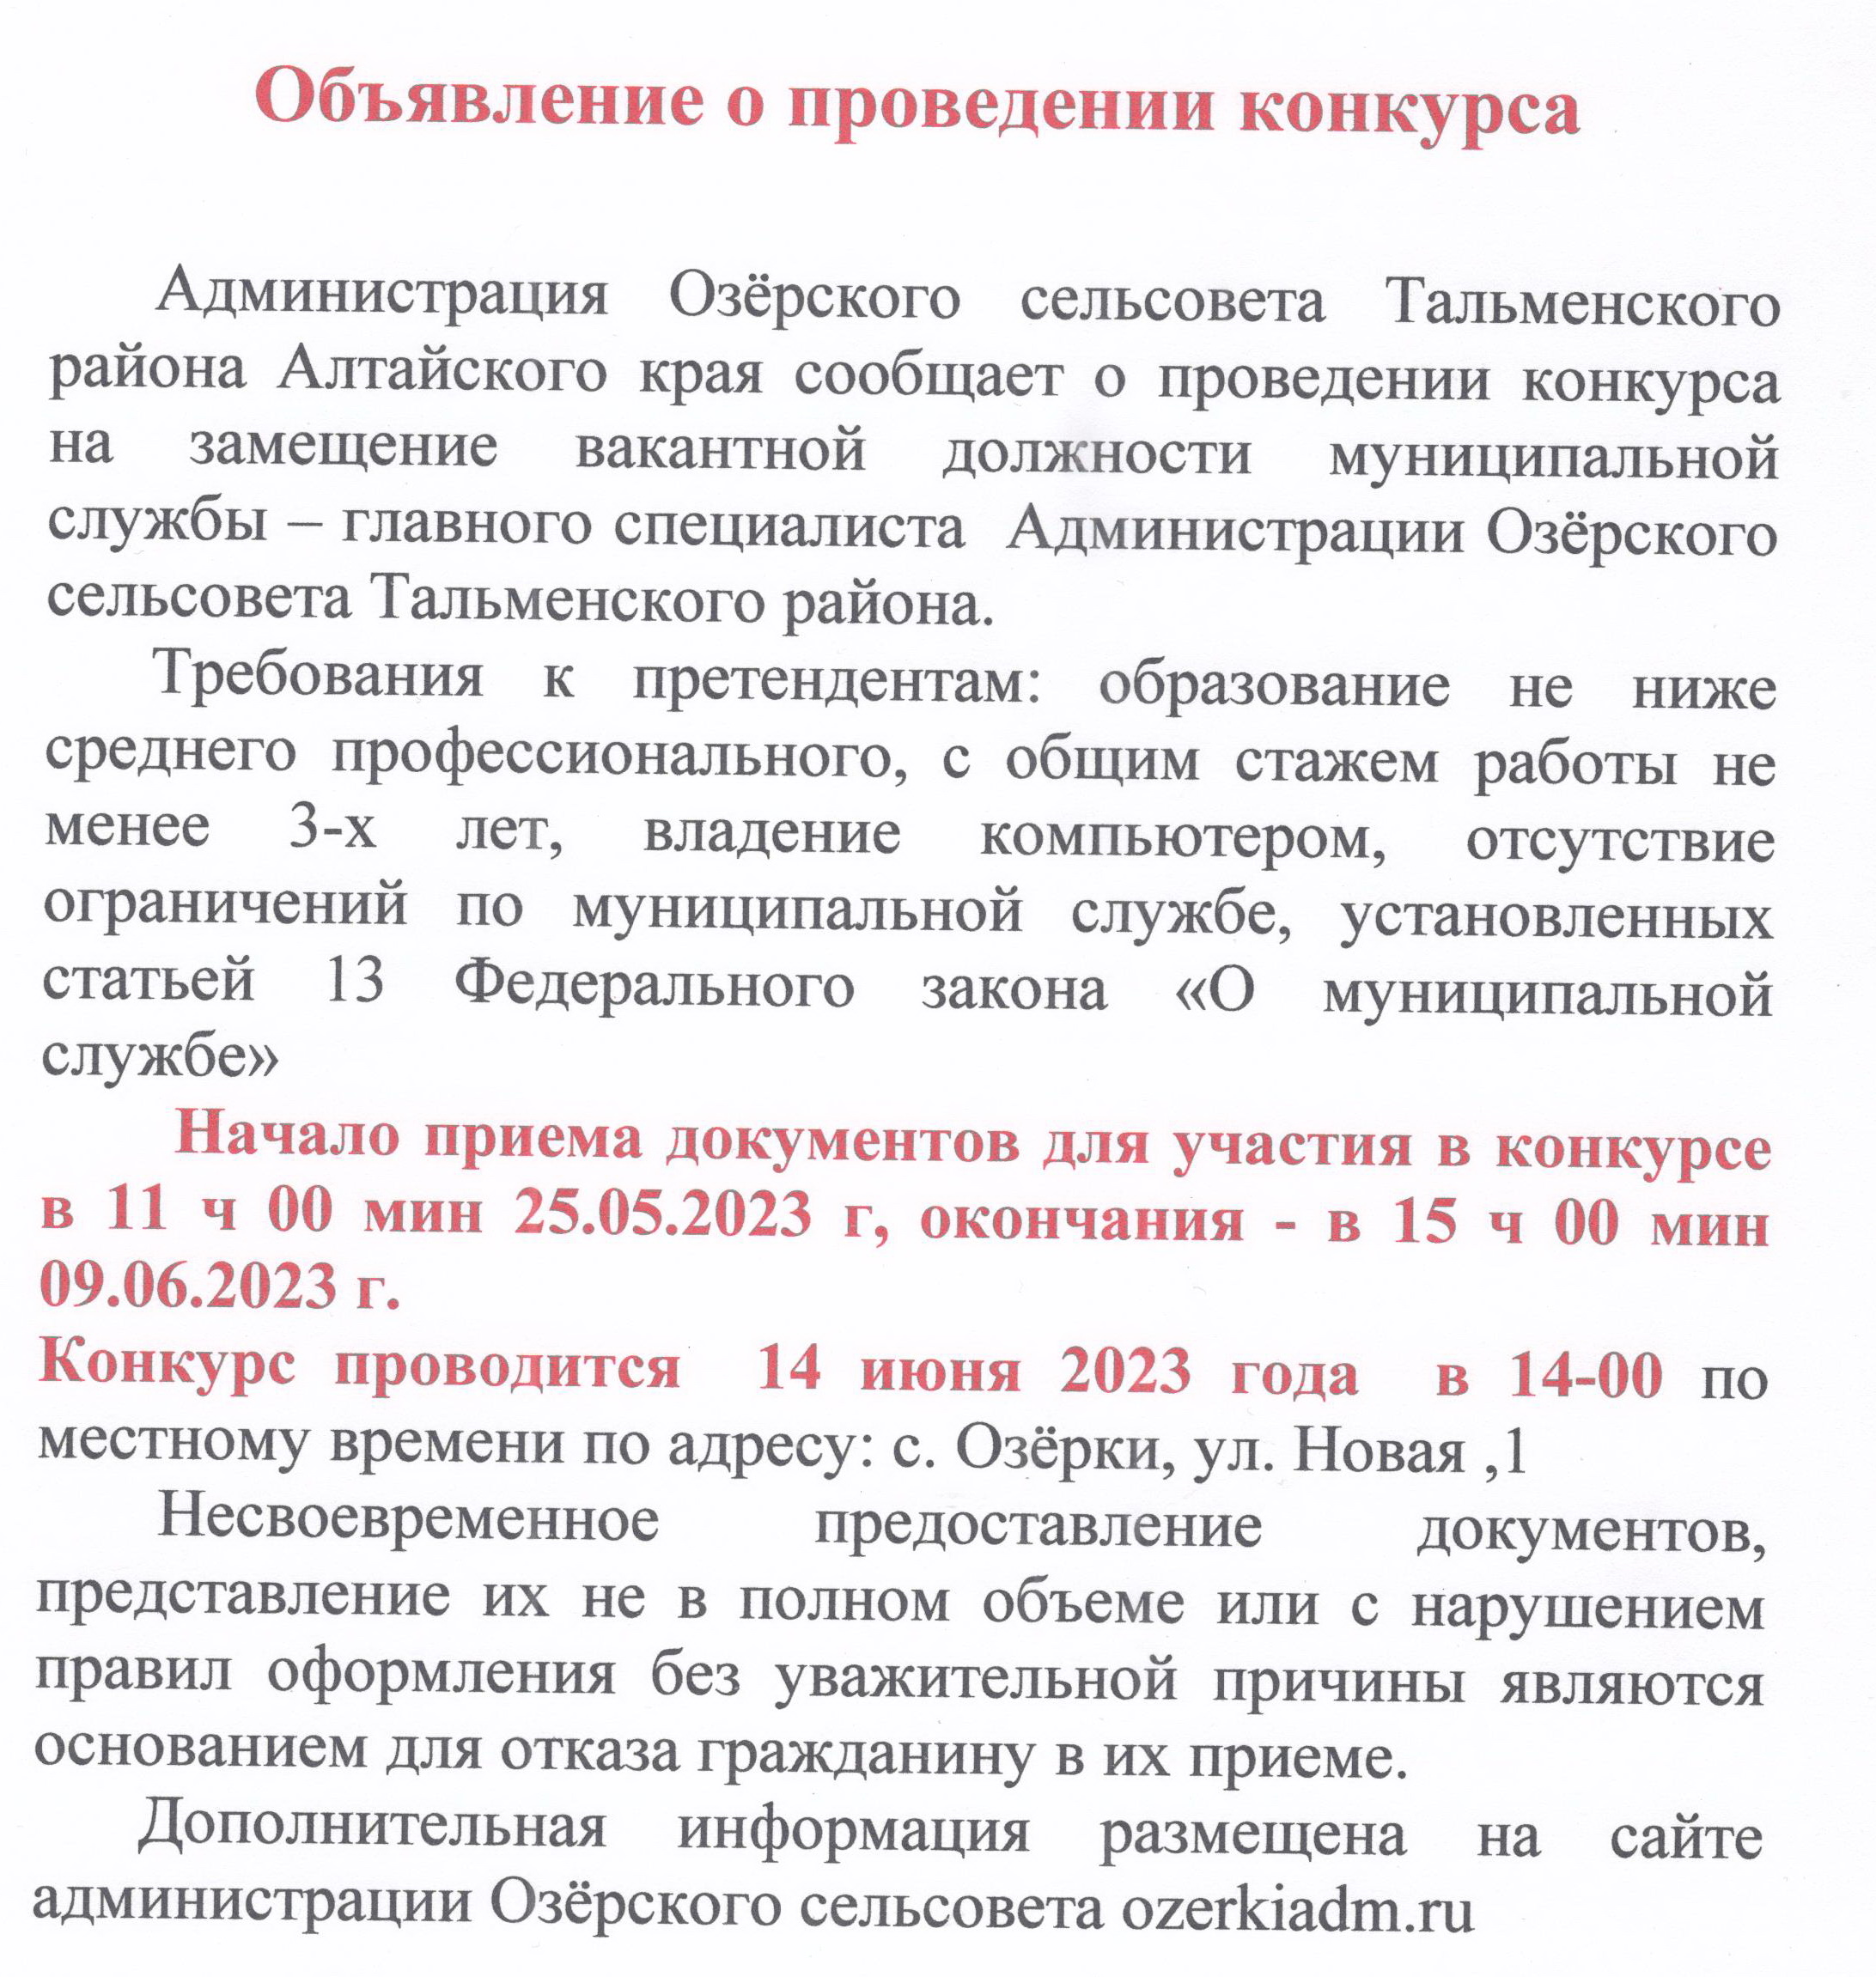 Объявление о проведении конкурса на замещение вакантной должности муниципальной службы (25.05.2023).